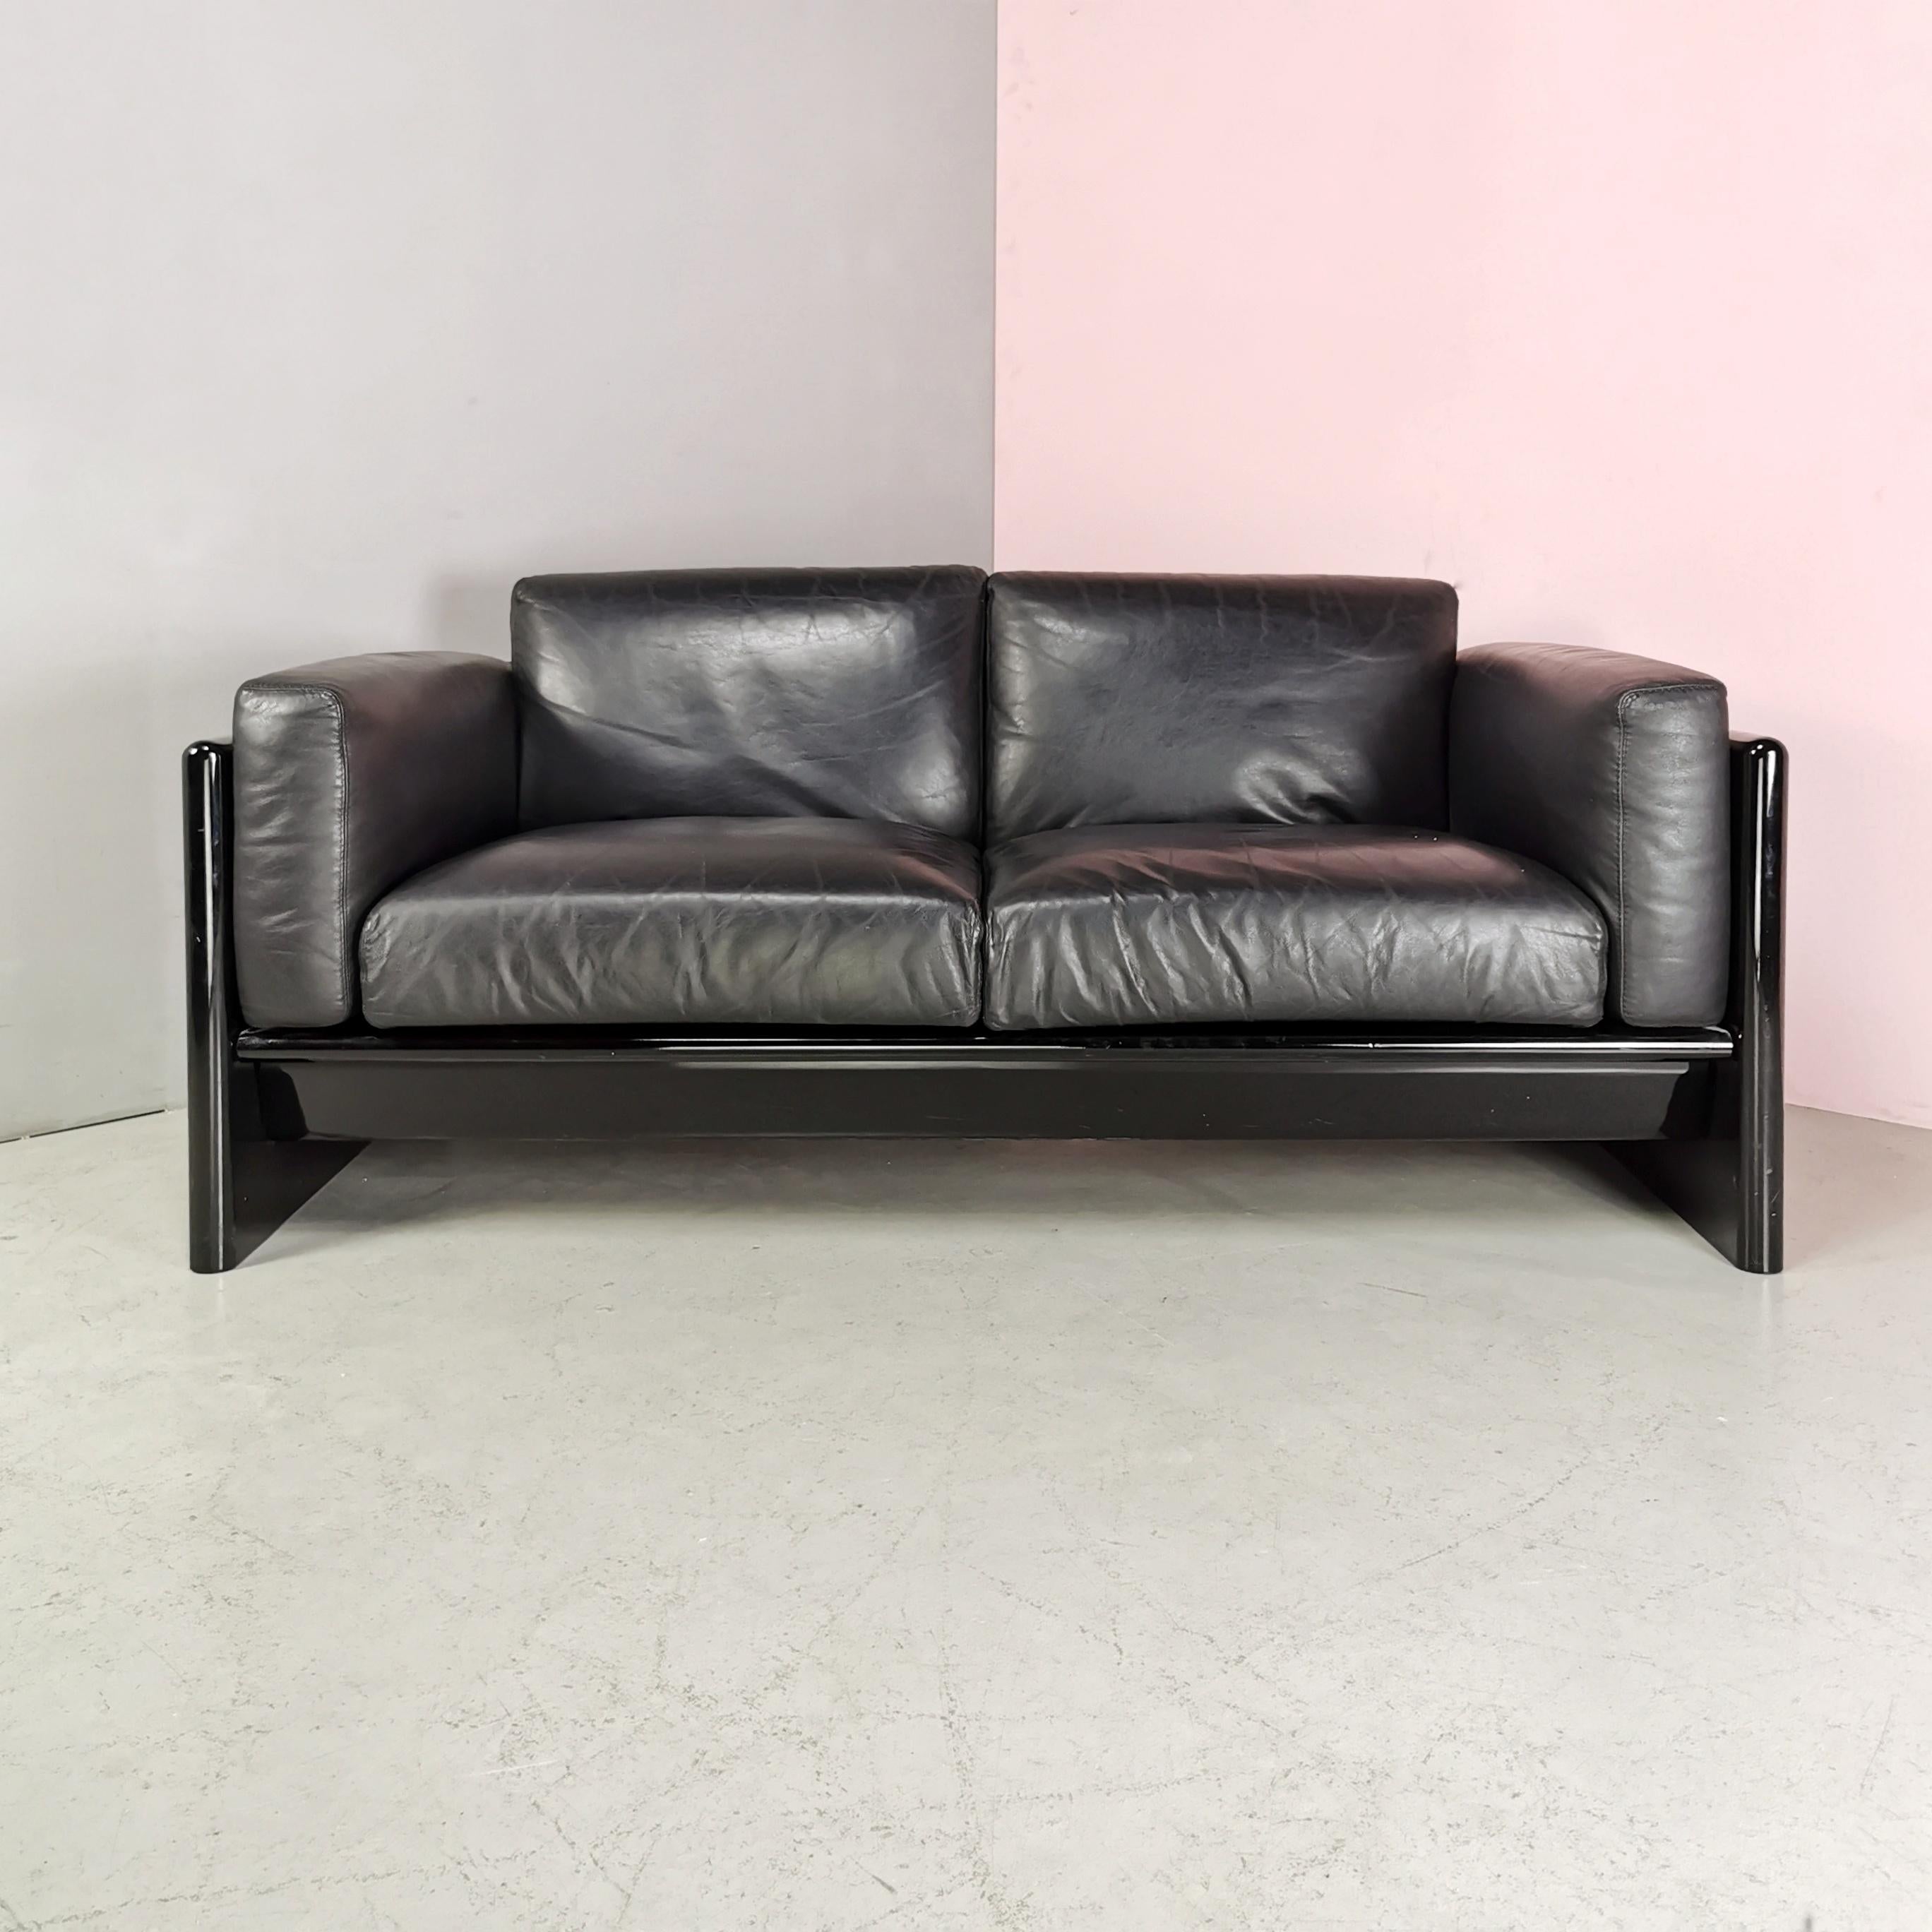 sofa aus der Möbelkollektion Studio Simon von Gavina.
die vollständig lackierte Struktur macht es zu einem sehr eleganten Sofa, auch als Mittelstück, da die Rückenlehne ebenfalls lackiert und fein verarbeitet ist.
hat keine sichtbaren Mängel,